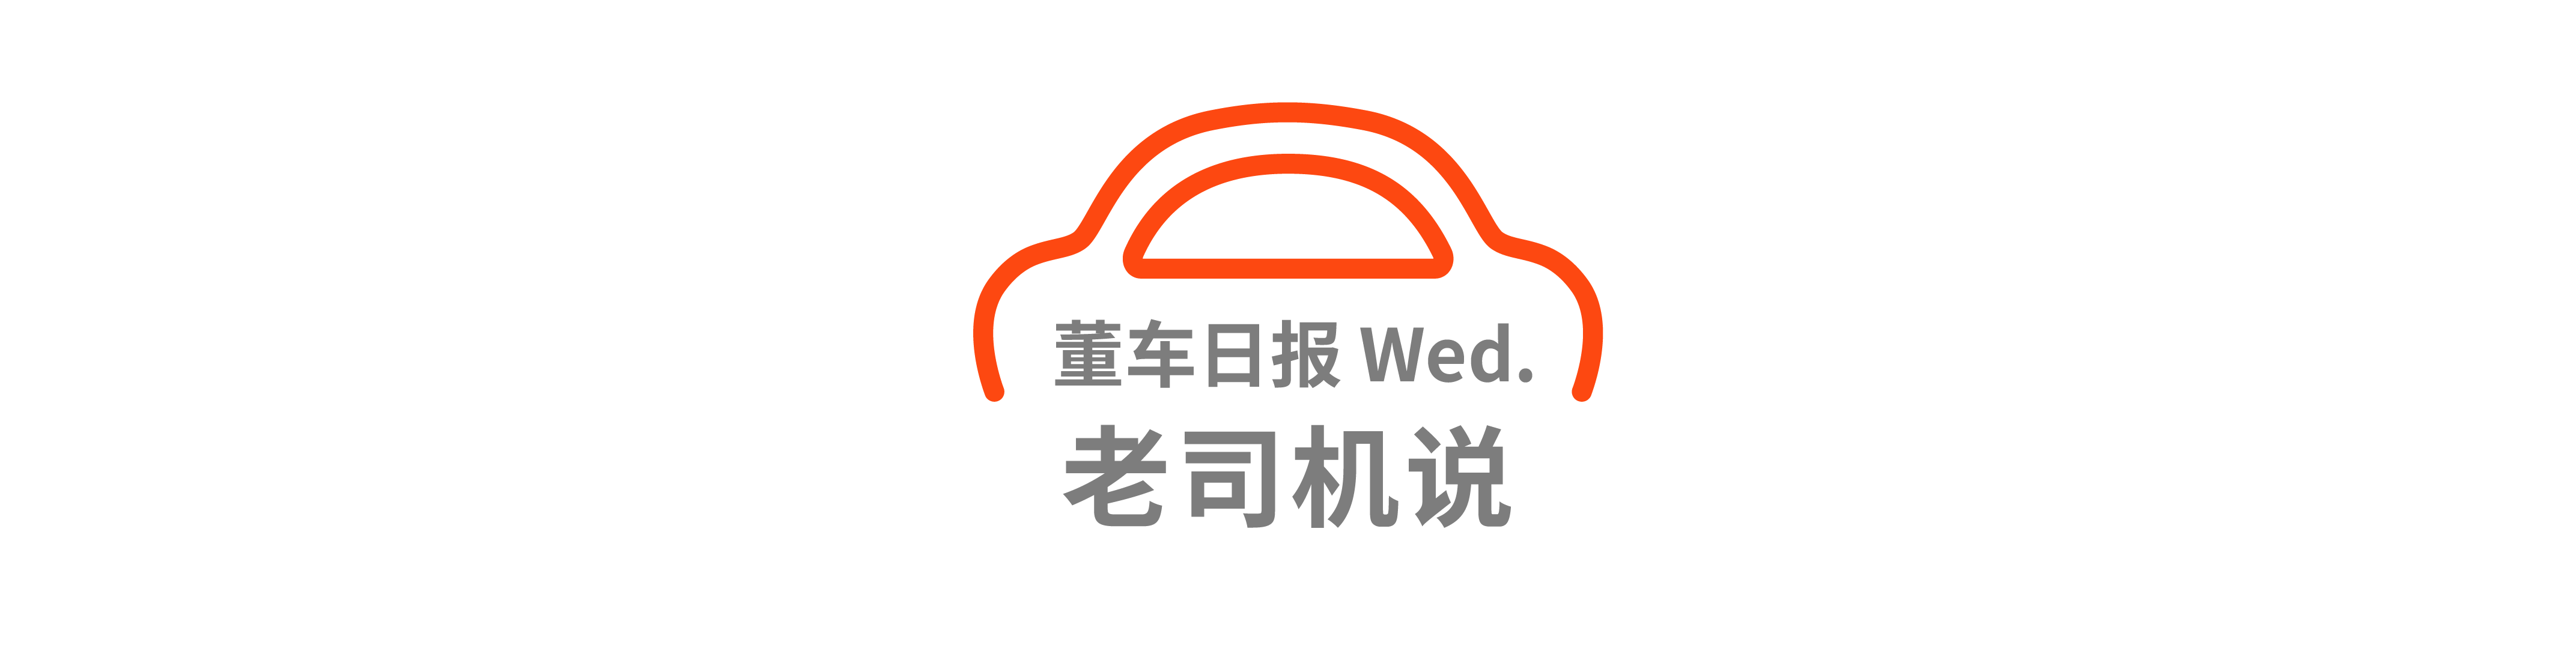 Dong Che Daily｜Huawei verwendet den Slogan „HUAWEI Asks the World“ / Führungskräfte von Chery sagen, dass Samstag ein Arbeitstag ist / Lamborghini veröffentlicht PHEV-System - Wed